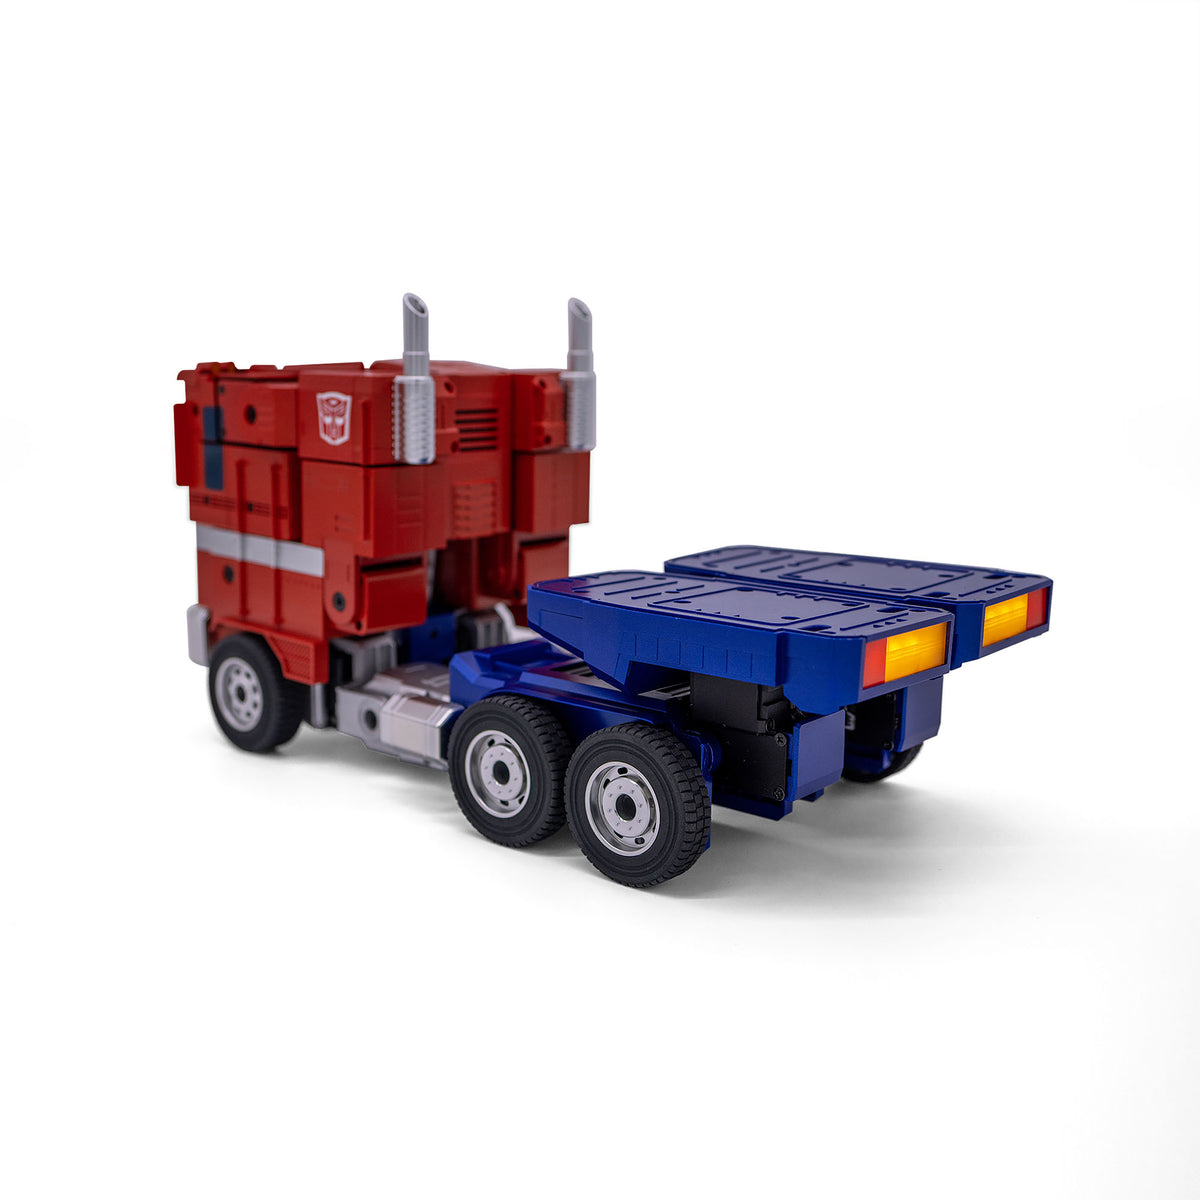 Transformers Optimus Prime Auto-Converting Robot Robosen – Hasbro Pulse